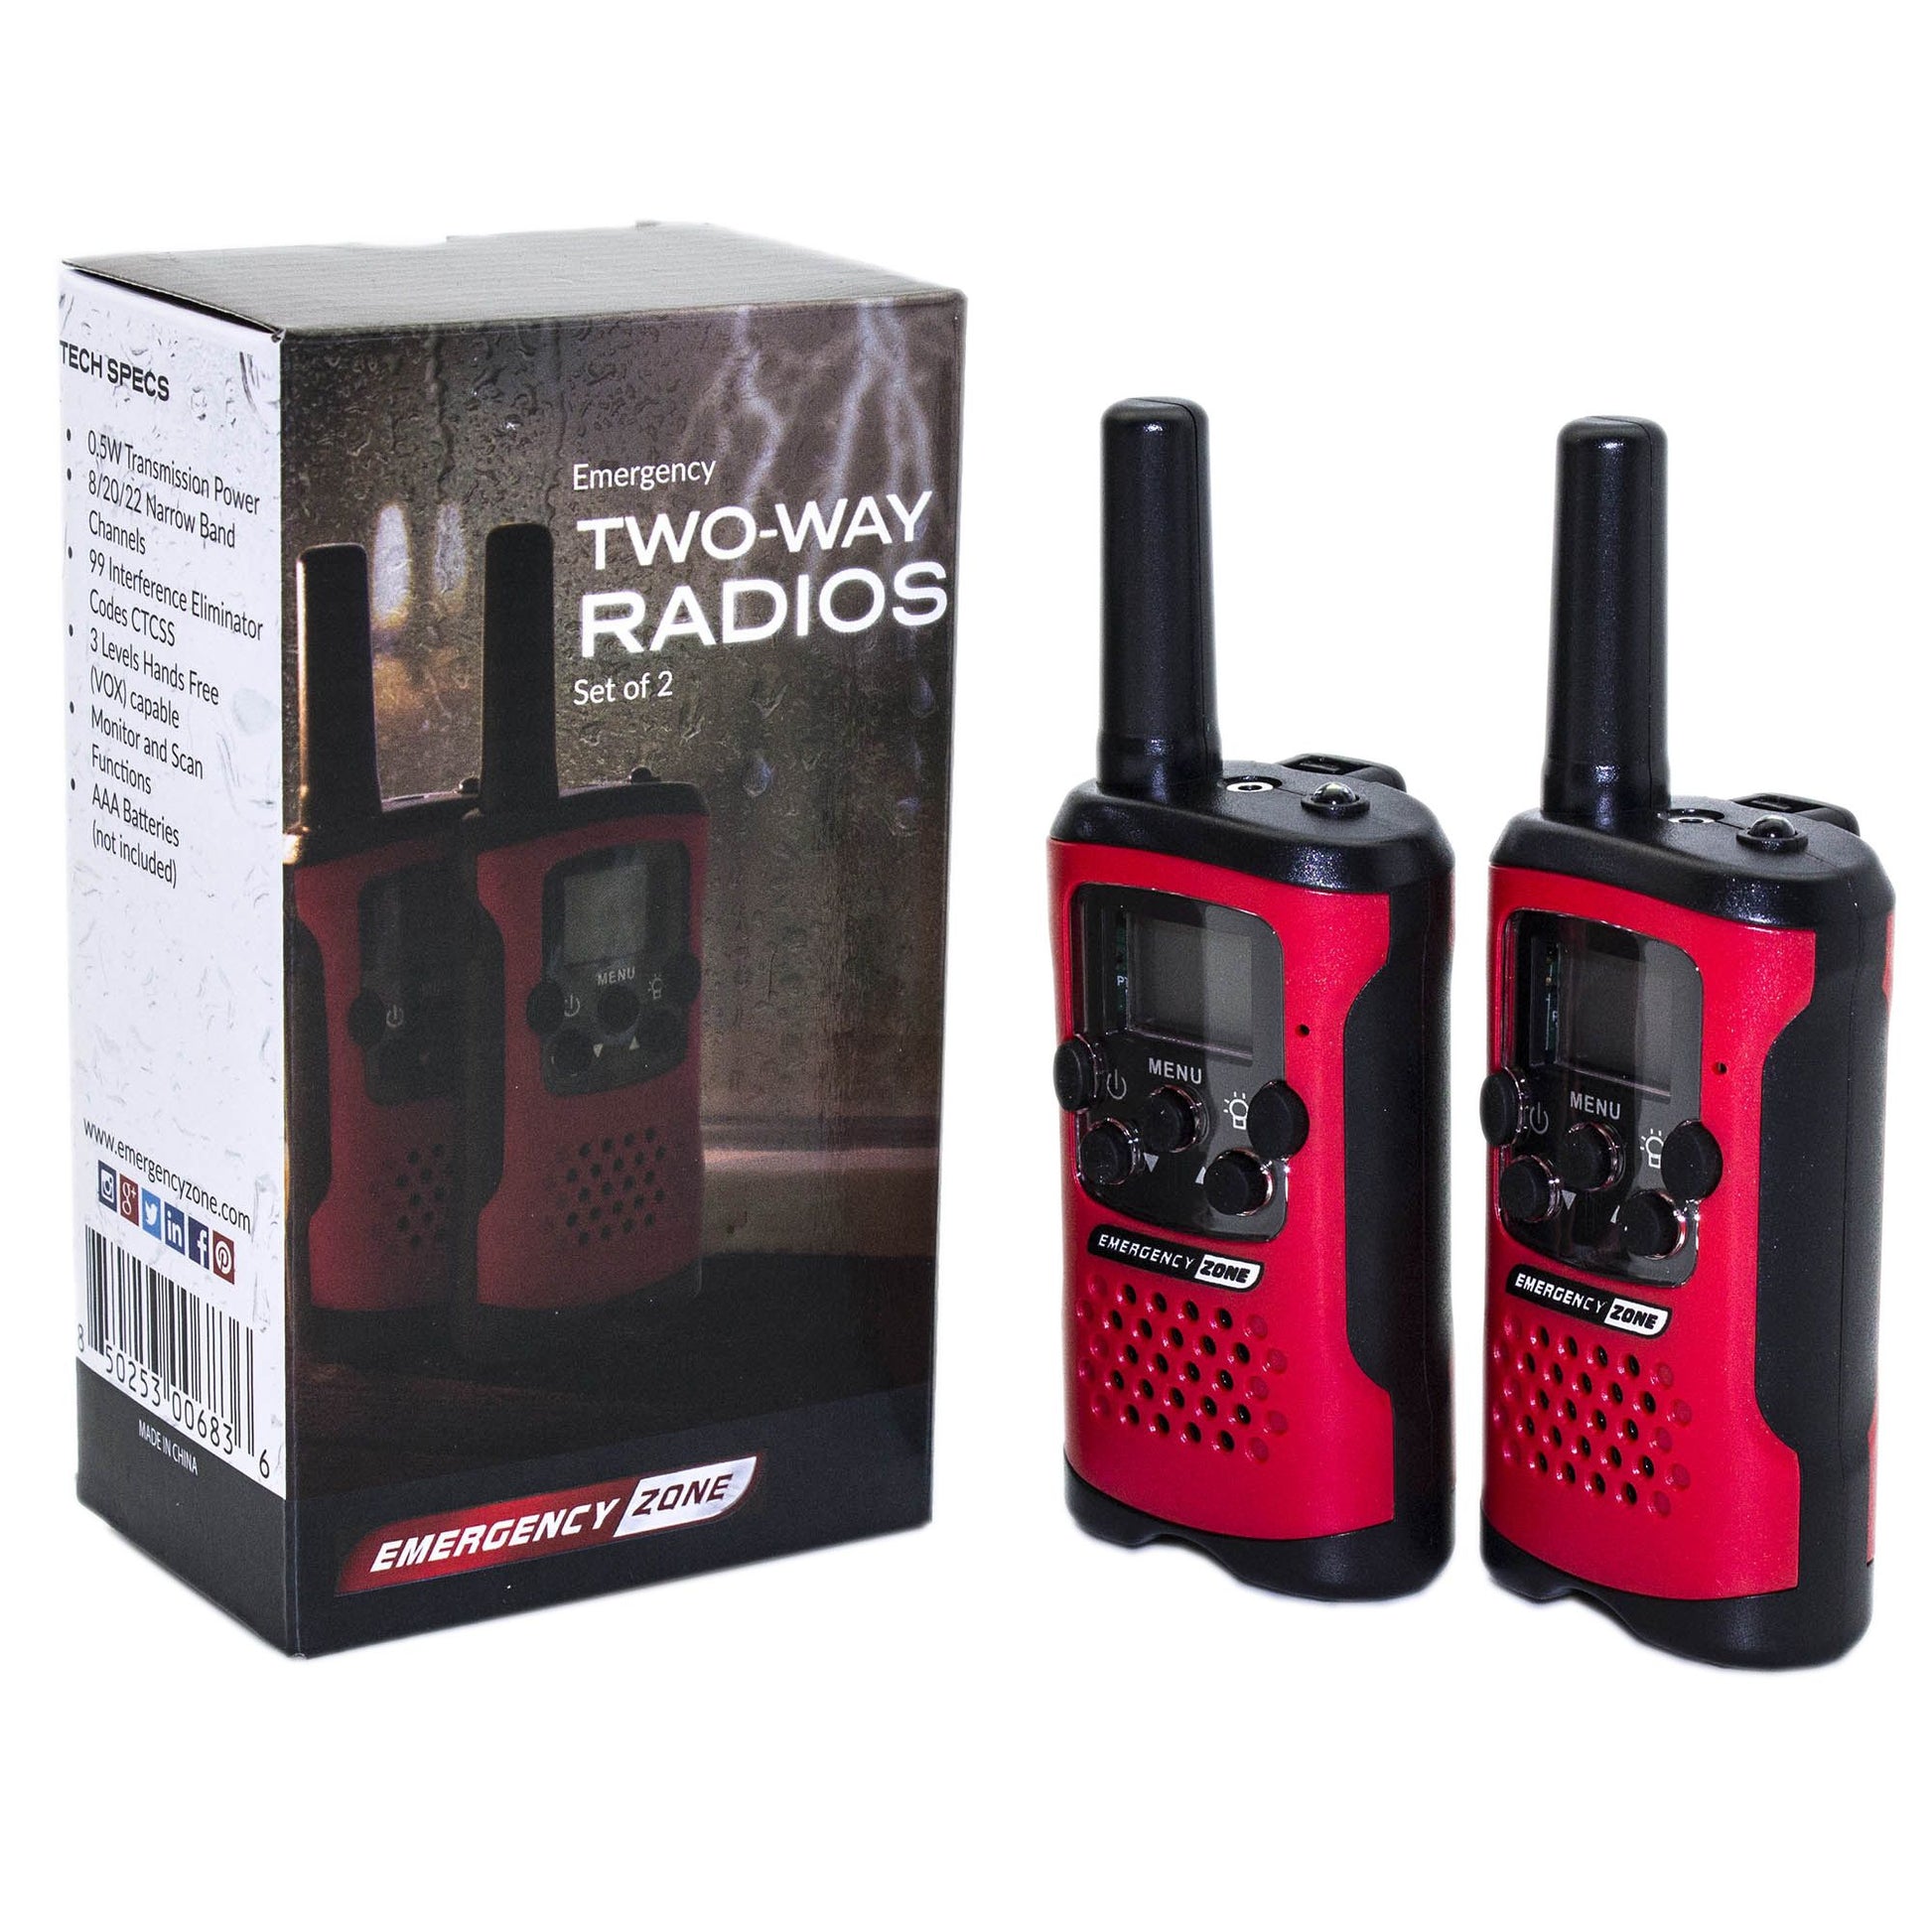 Walkie Talkies - Set of 2 - Emergency Long Range Two-Way Radios